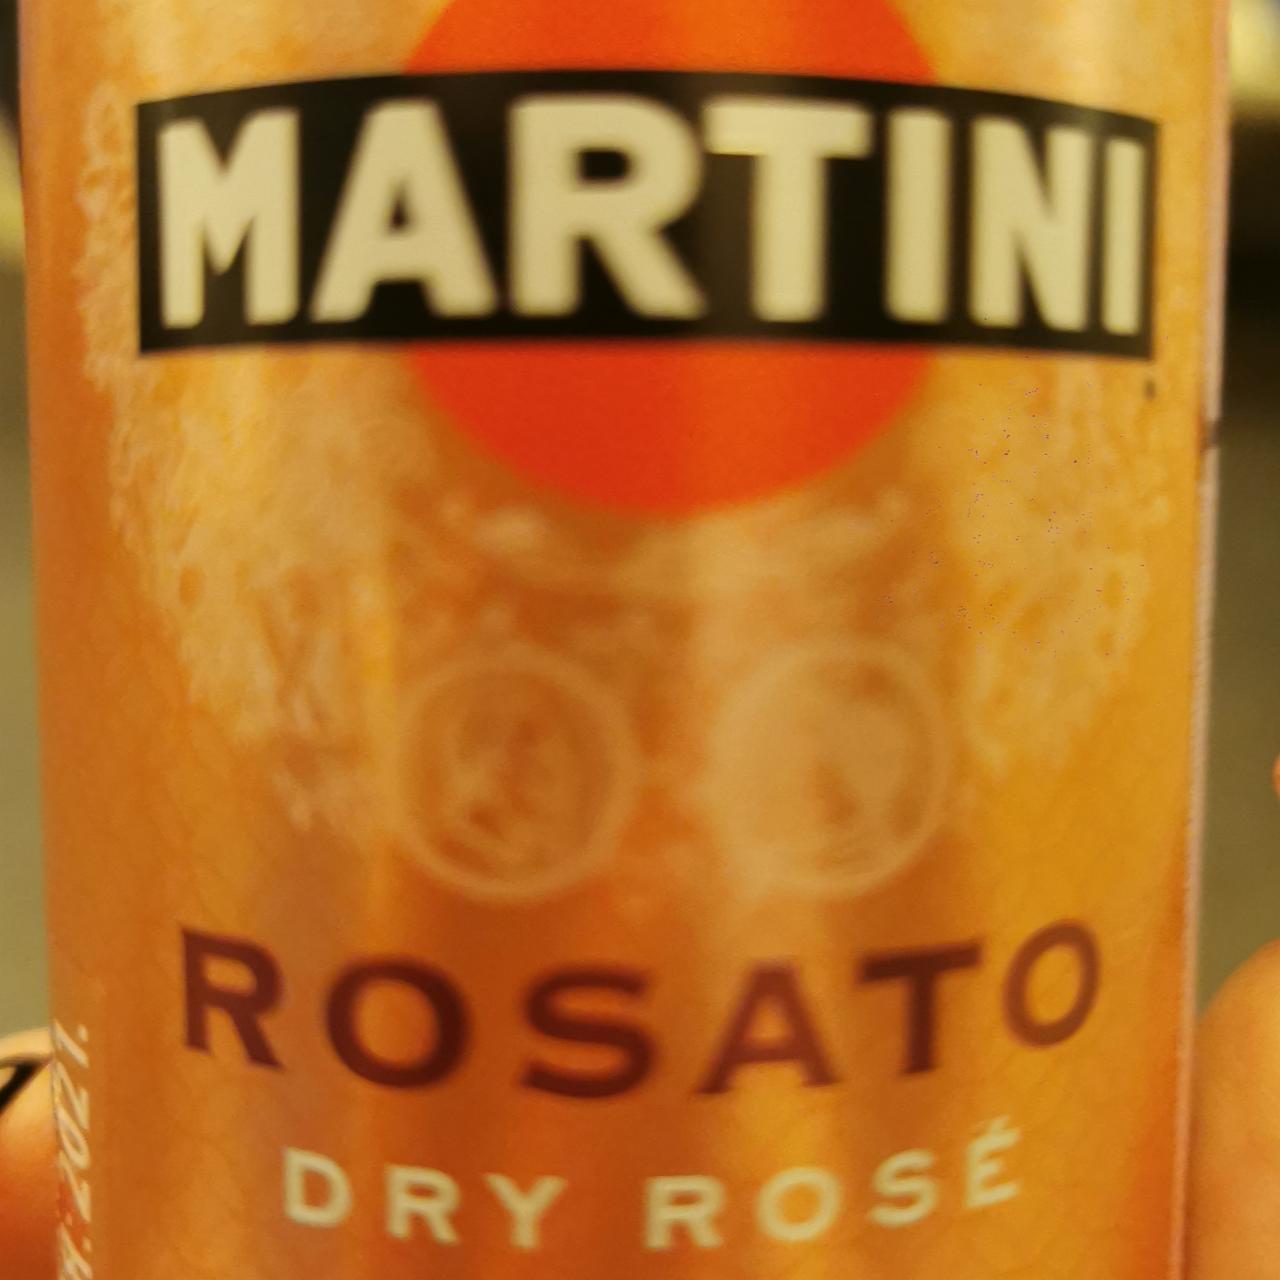 Фото - напиток алкогольный rosato dry rose Martini